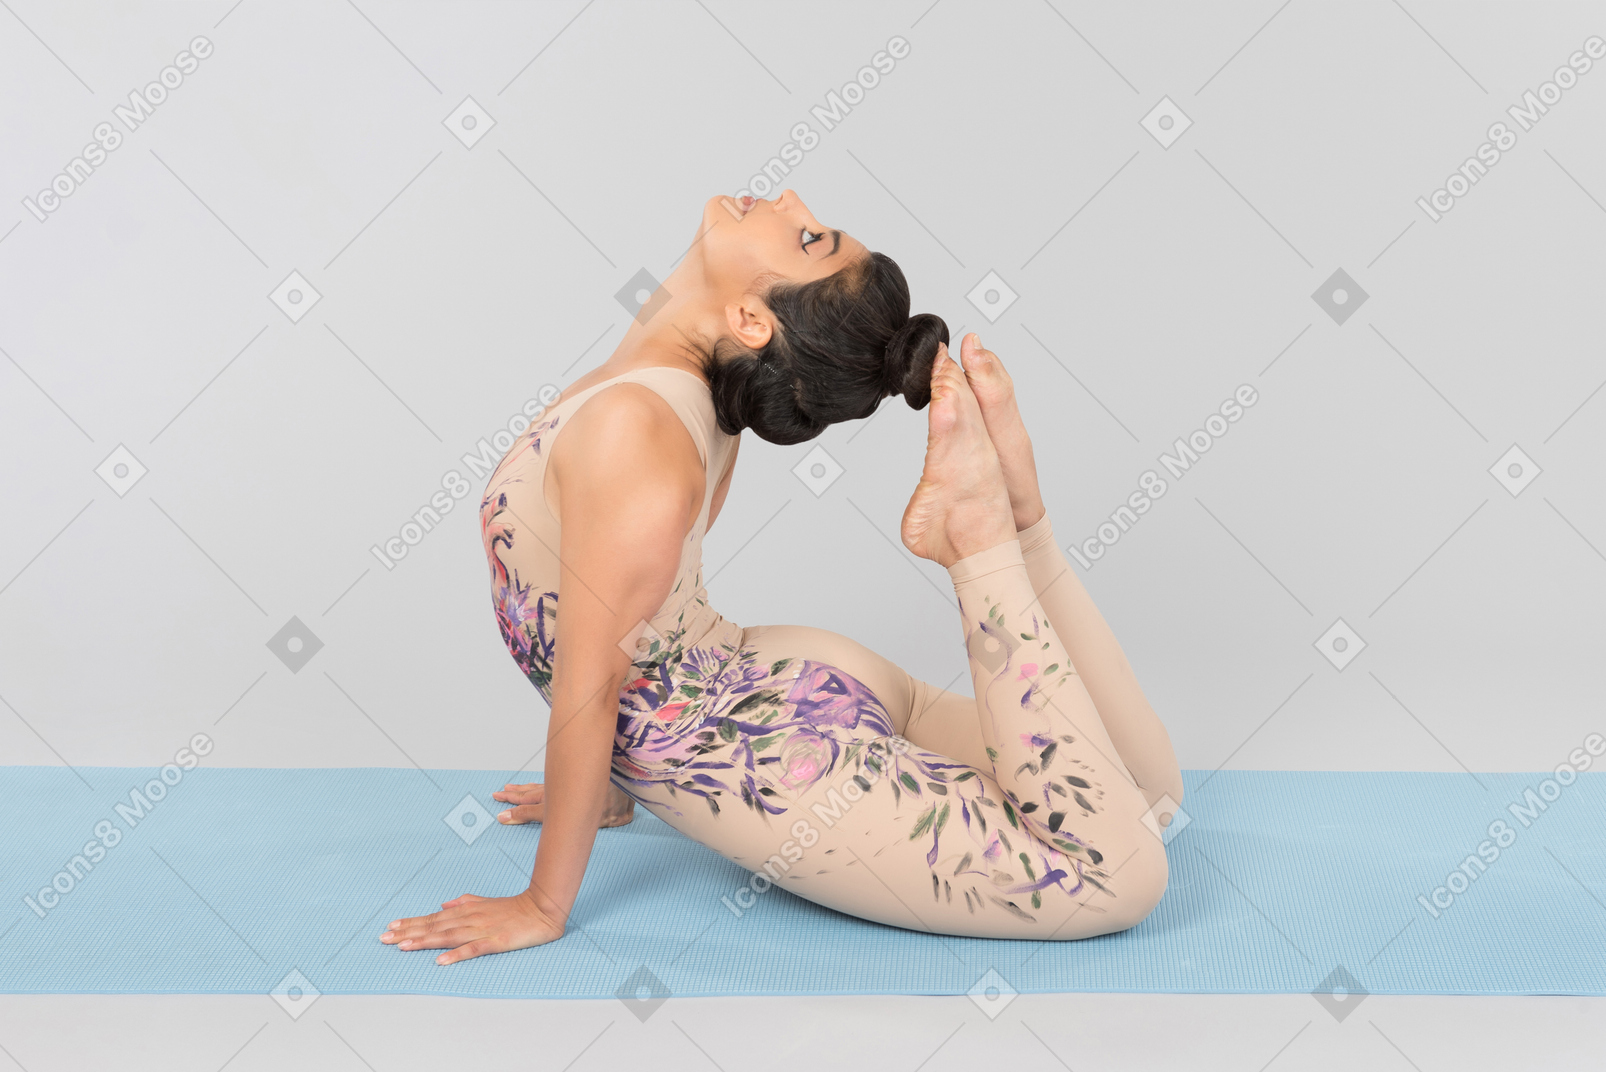 Flexible jeune femme indienne se trouvant sur un tapis de yoga et touchant la tête avec les orteils